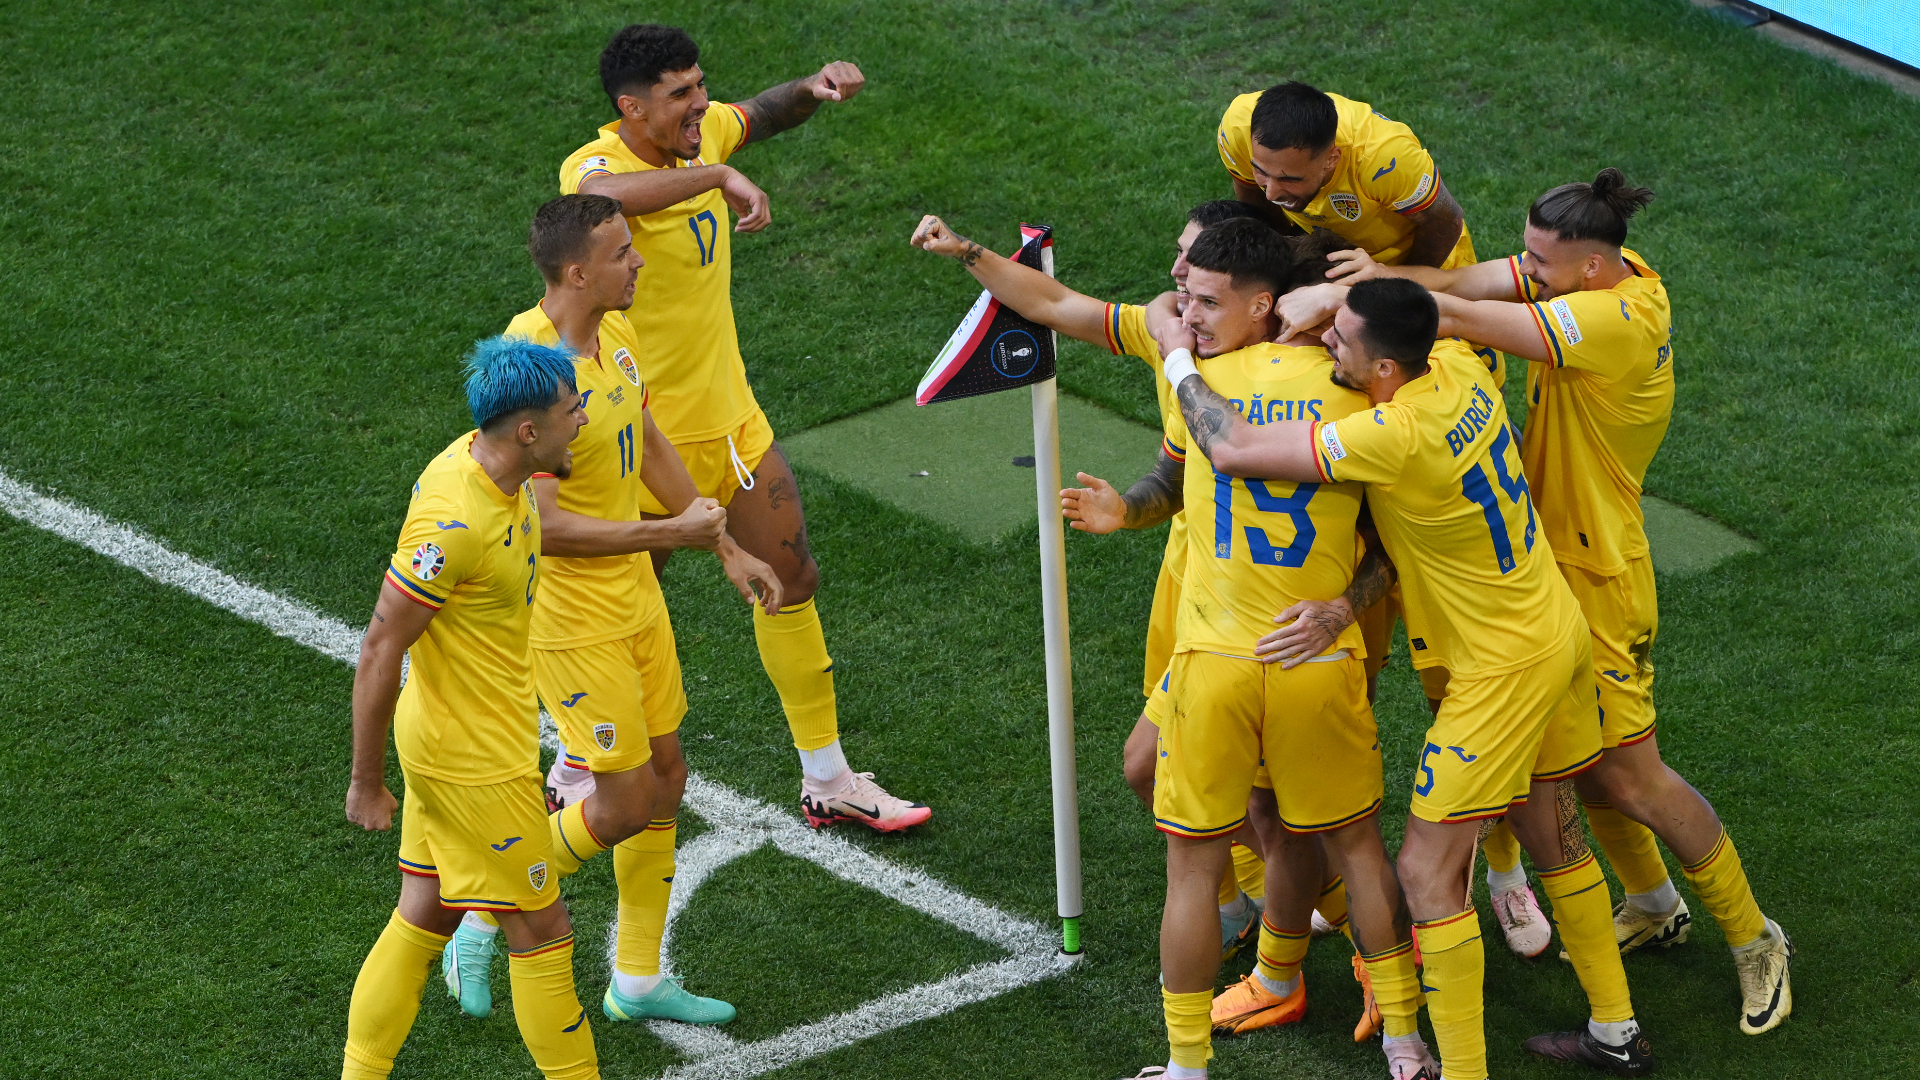 Report: Romania 3-0 Ukraine